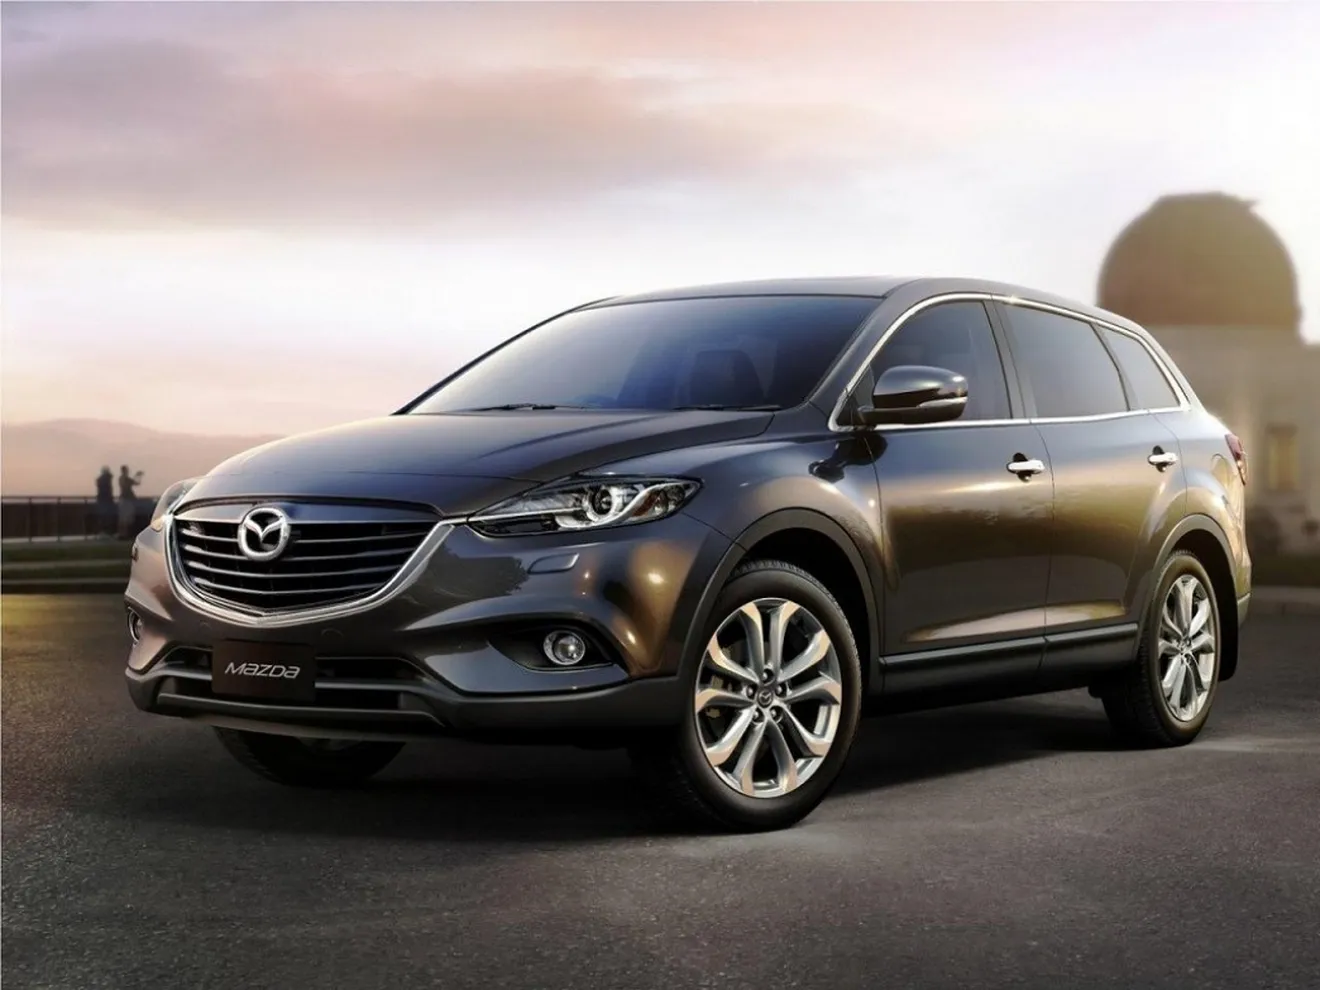 La próxima generación del Mazda CX-9 llegará en 2016